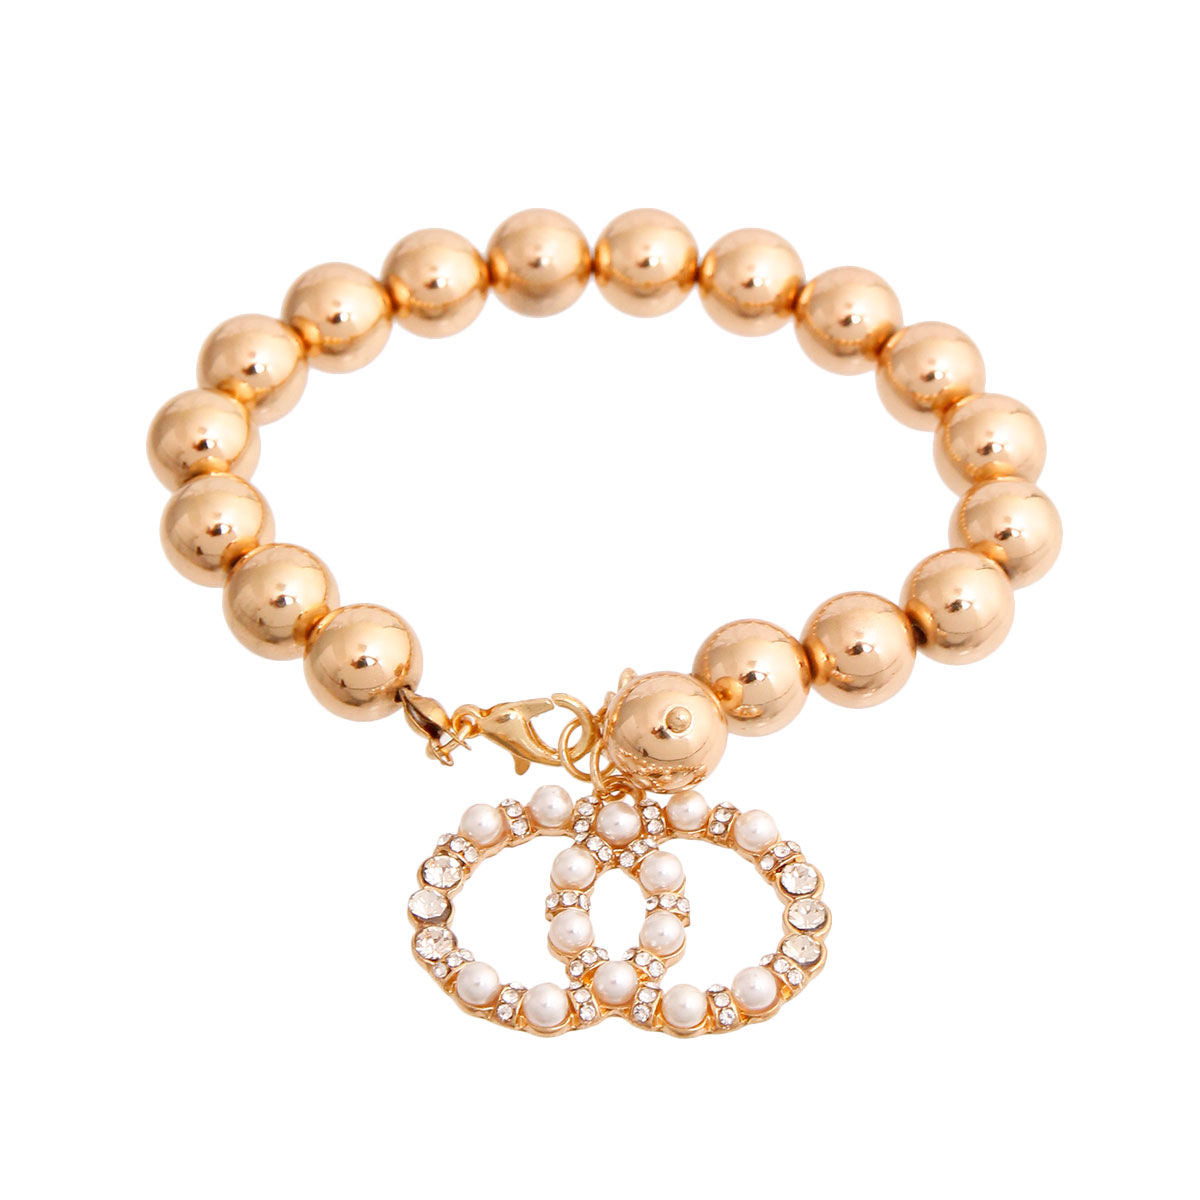 Designer Style Gold Ball Bracelet